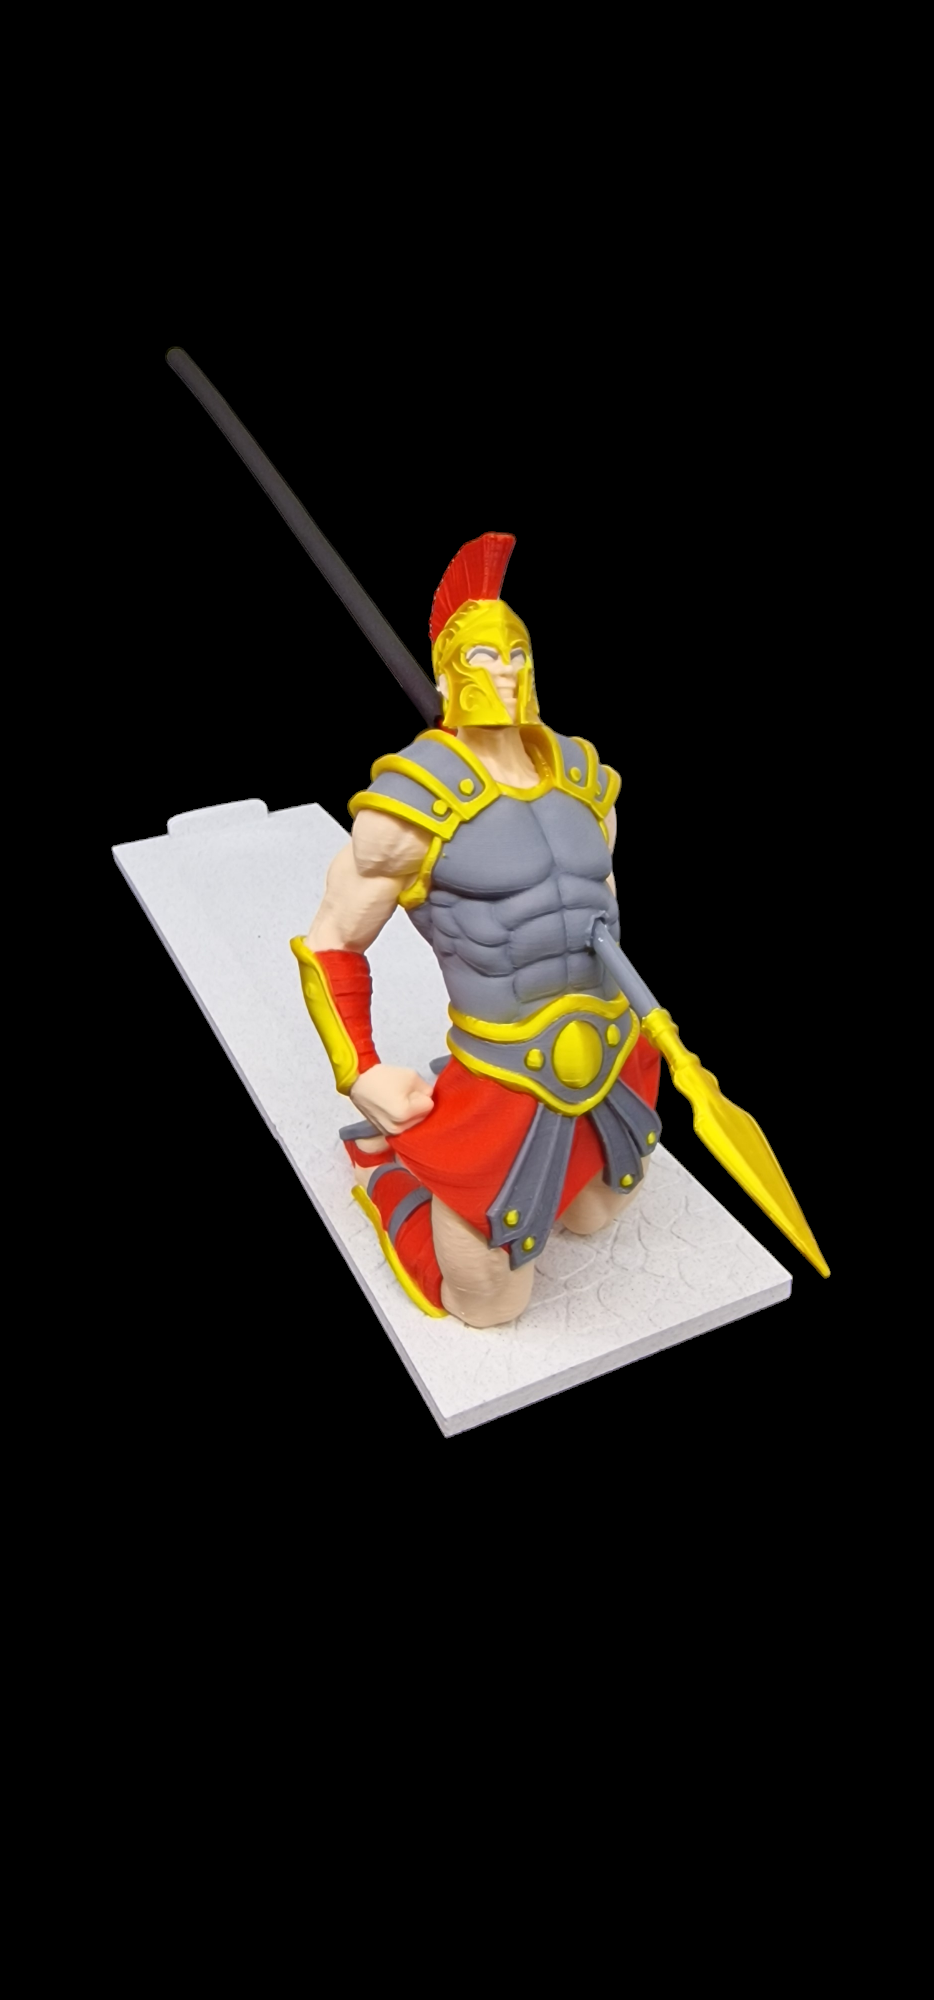 Unikátní stojánek na vonné tyčinky - Římský válečník zasažený oštěpem